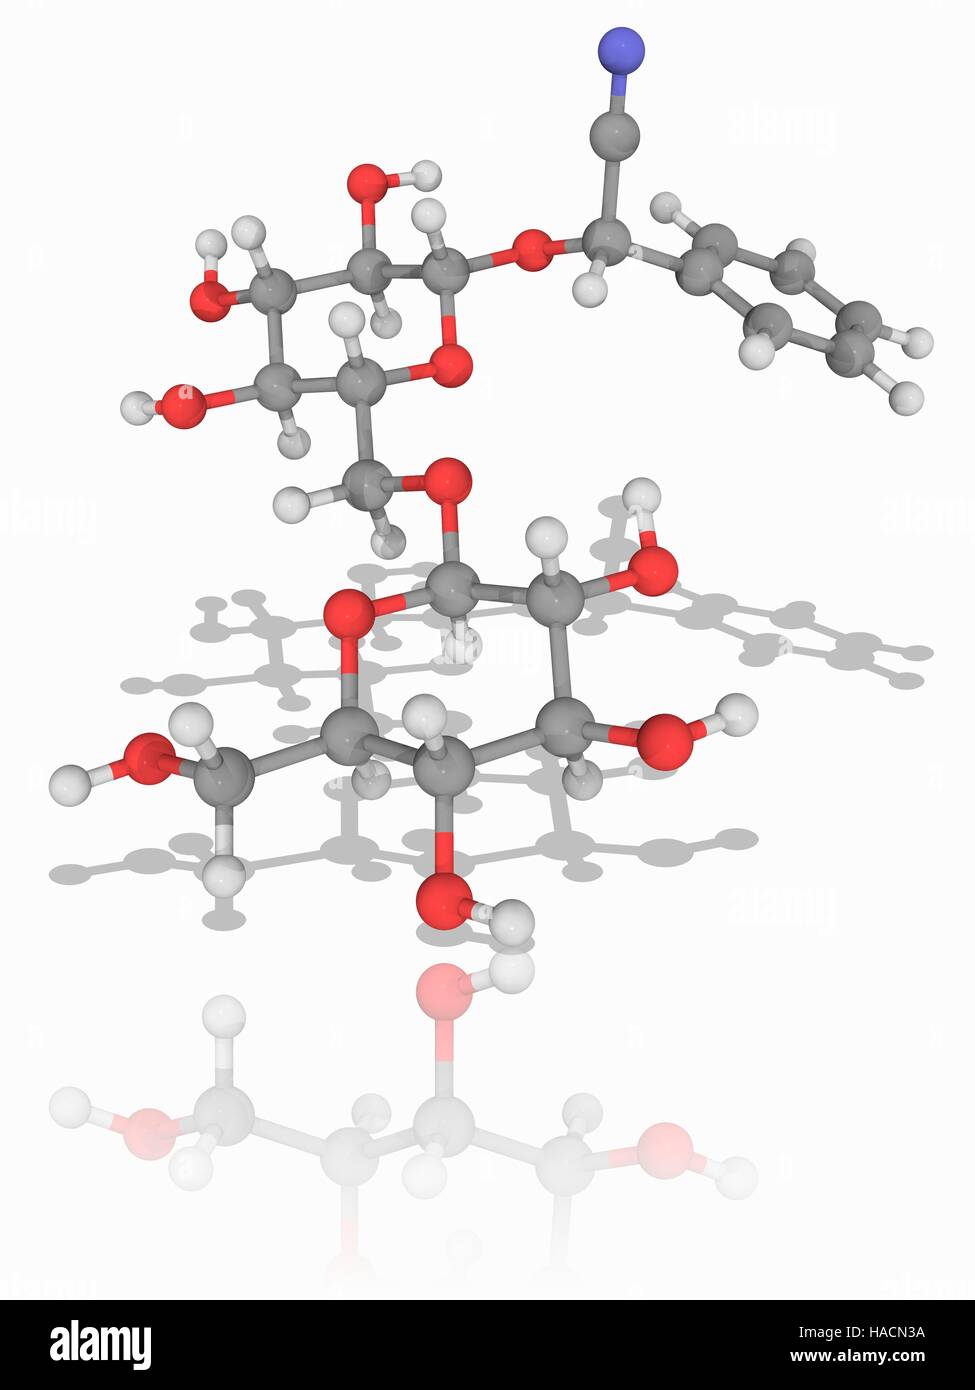 Amygdalin. Molekülmodell Glykosid Amygdalin (C20. H27. N.O11), eine Chemikalie, die aus Samen von Pflanzen aus der Gattung Prunus, wie Mandeln oder Aprikosen gewonnen. Atome als Kugeln dargestellt werden und sind farblich gekennzeichnet: Kohlenstoff (grau), Wasserstoff (weiß), Stickstoff (blau) und Sauerstoff (rot). Abbildung. Stockfoto